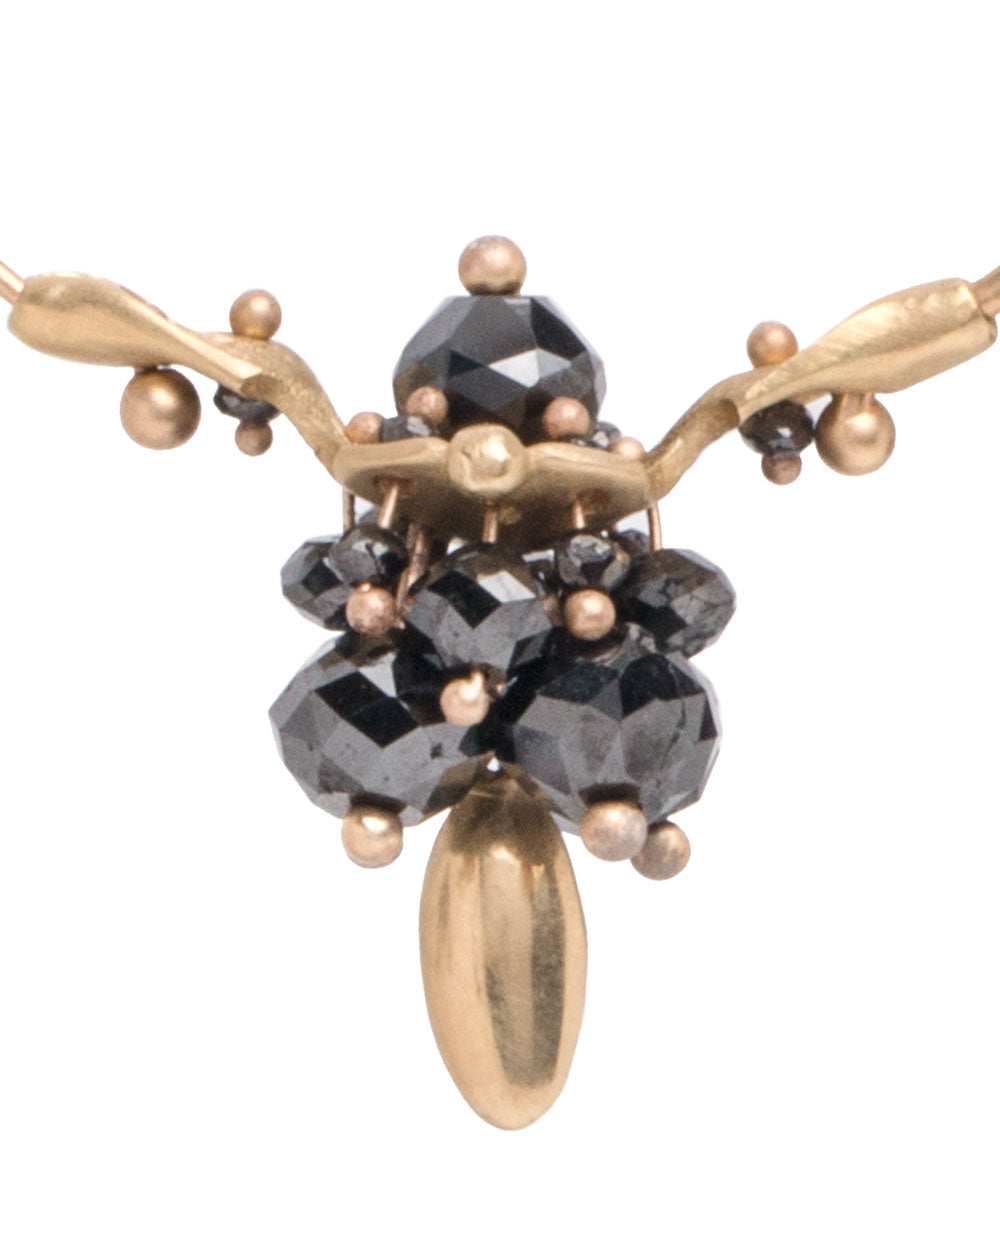 Black Diamond Cluster Hoop Earrings